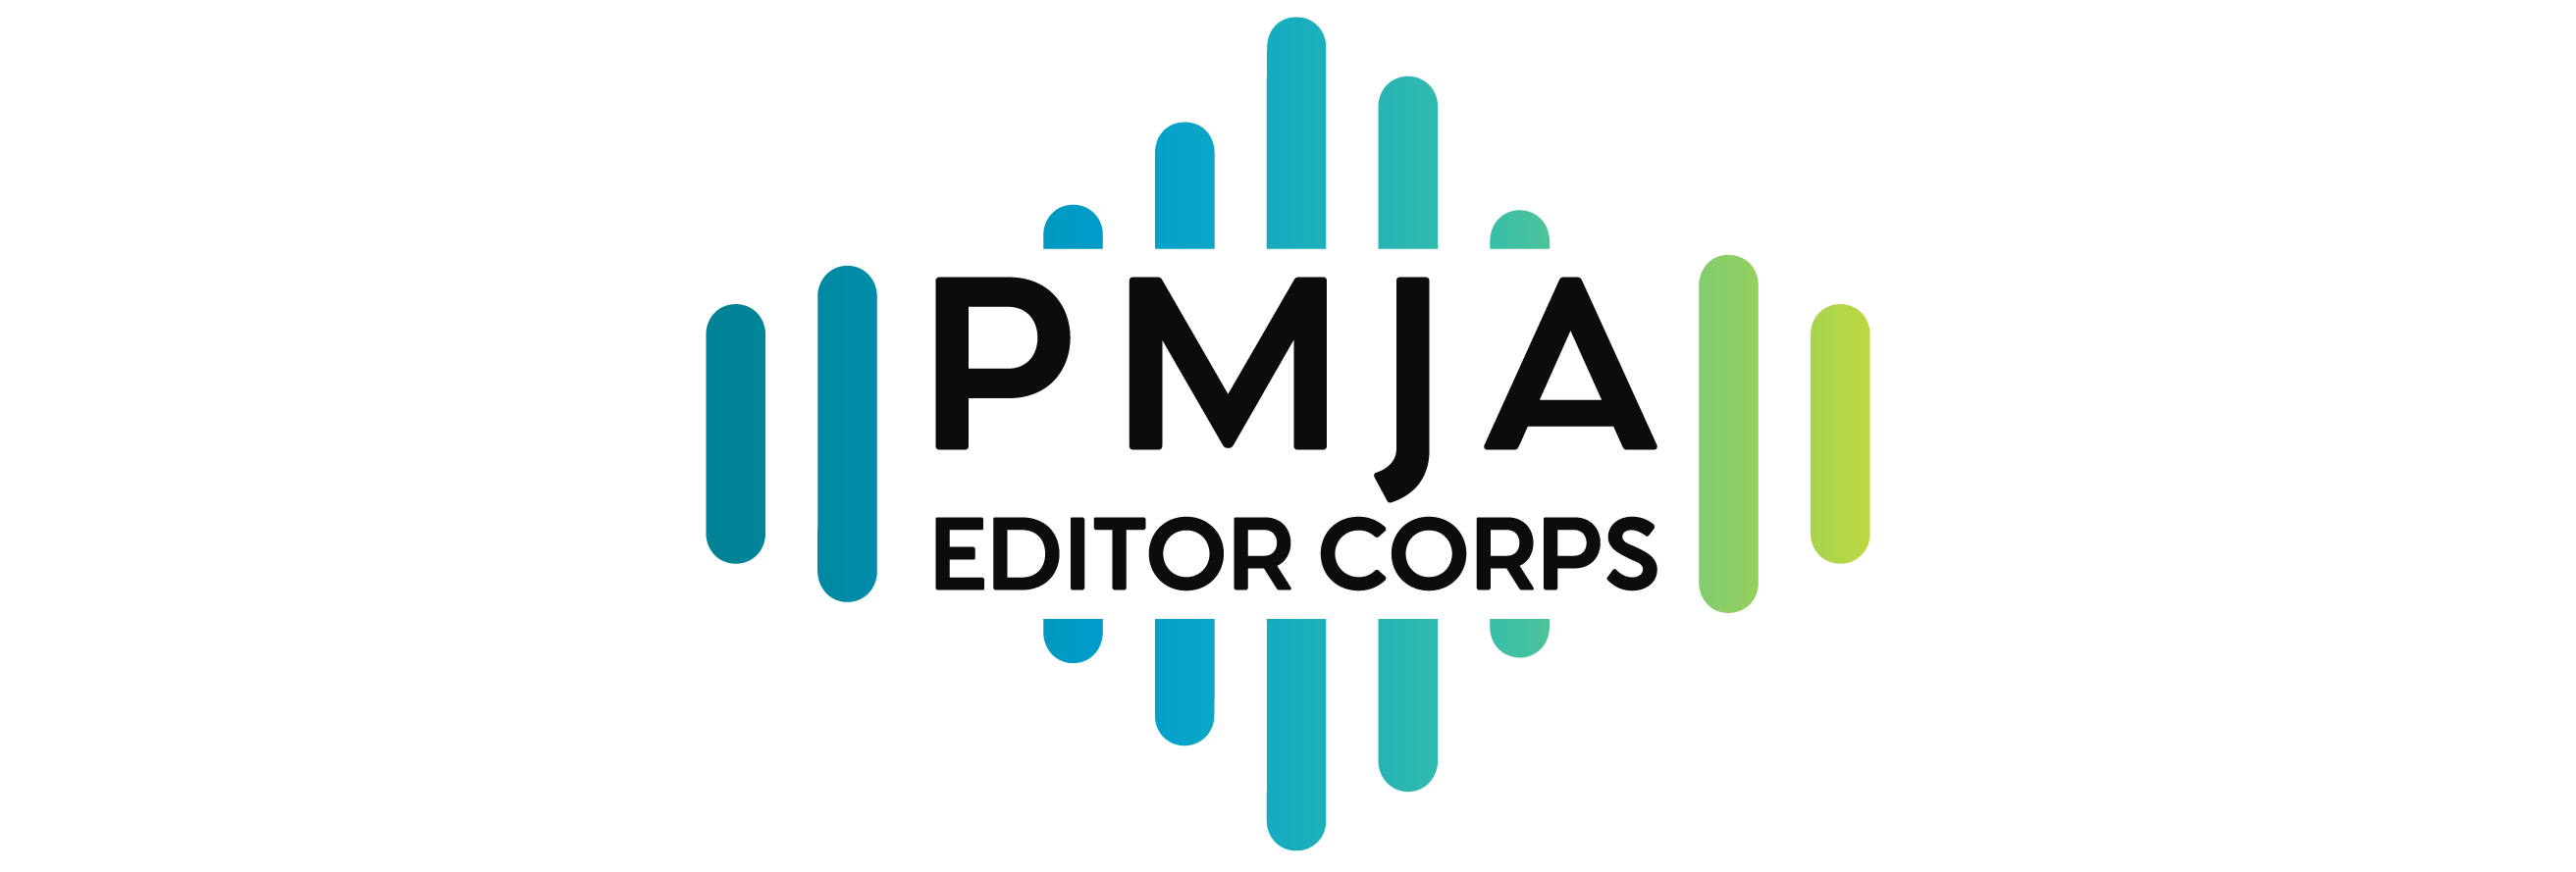 PMJA Editor Corps